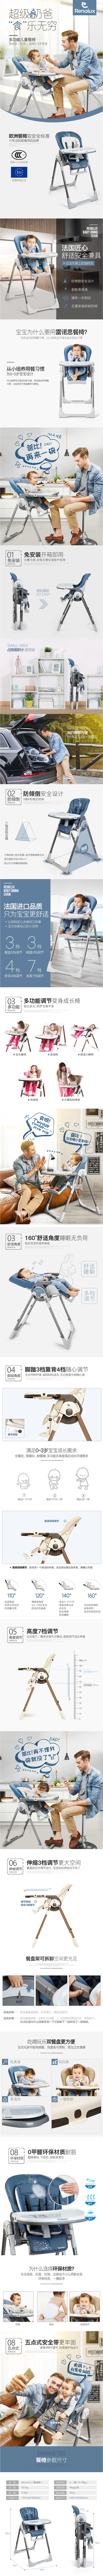 淘宝美工氧气母婴玩具儿童婴儿宝宝餐椅详情页作品